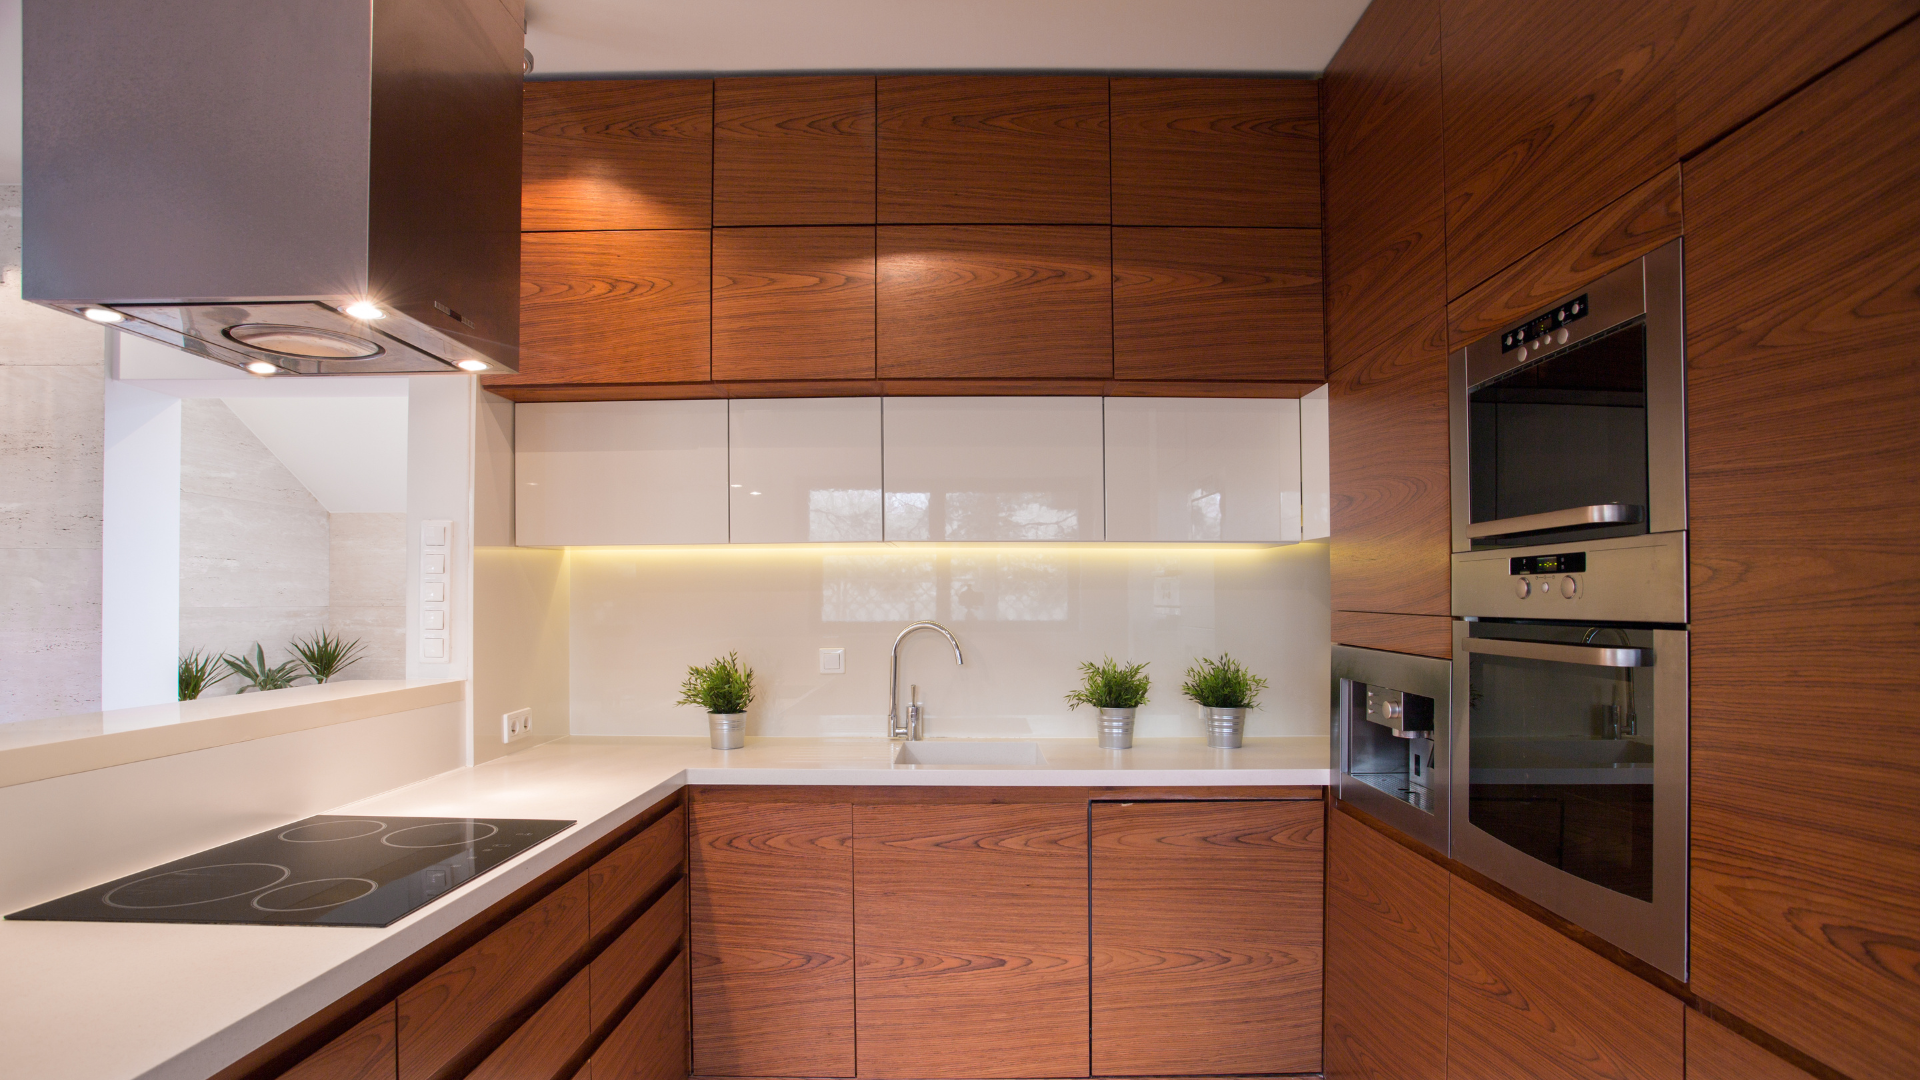 cabinet storage solutions, kitchen, decor, design, interior